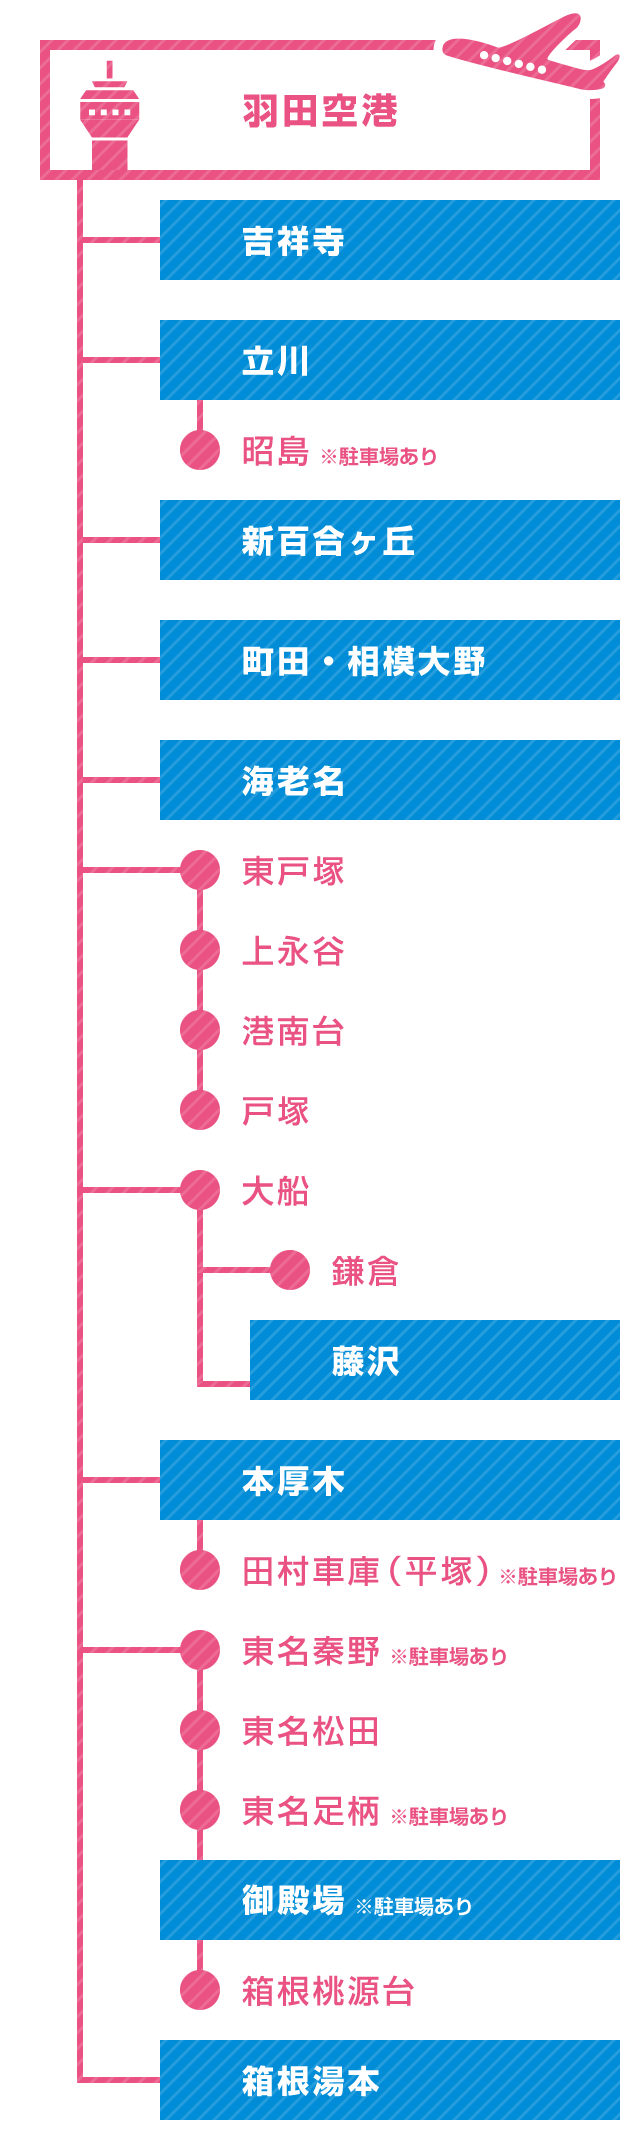 羽田空港路線図